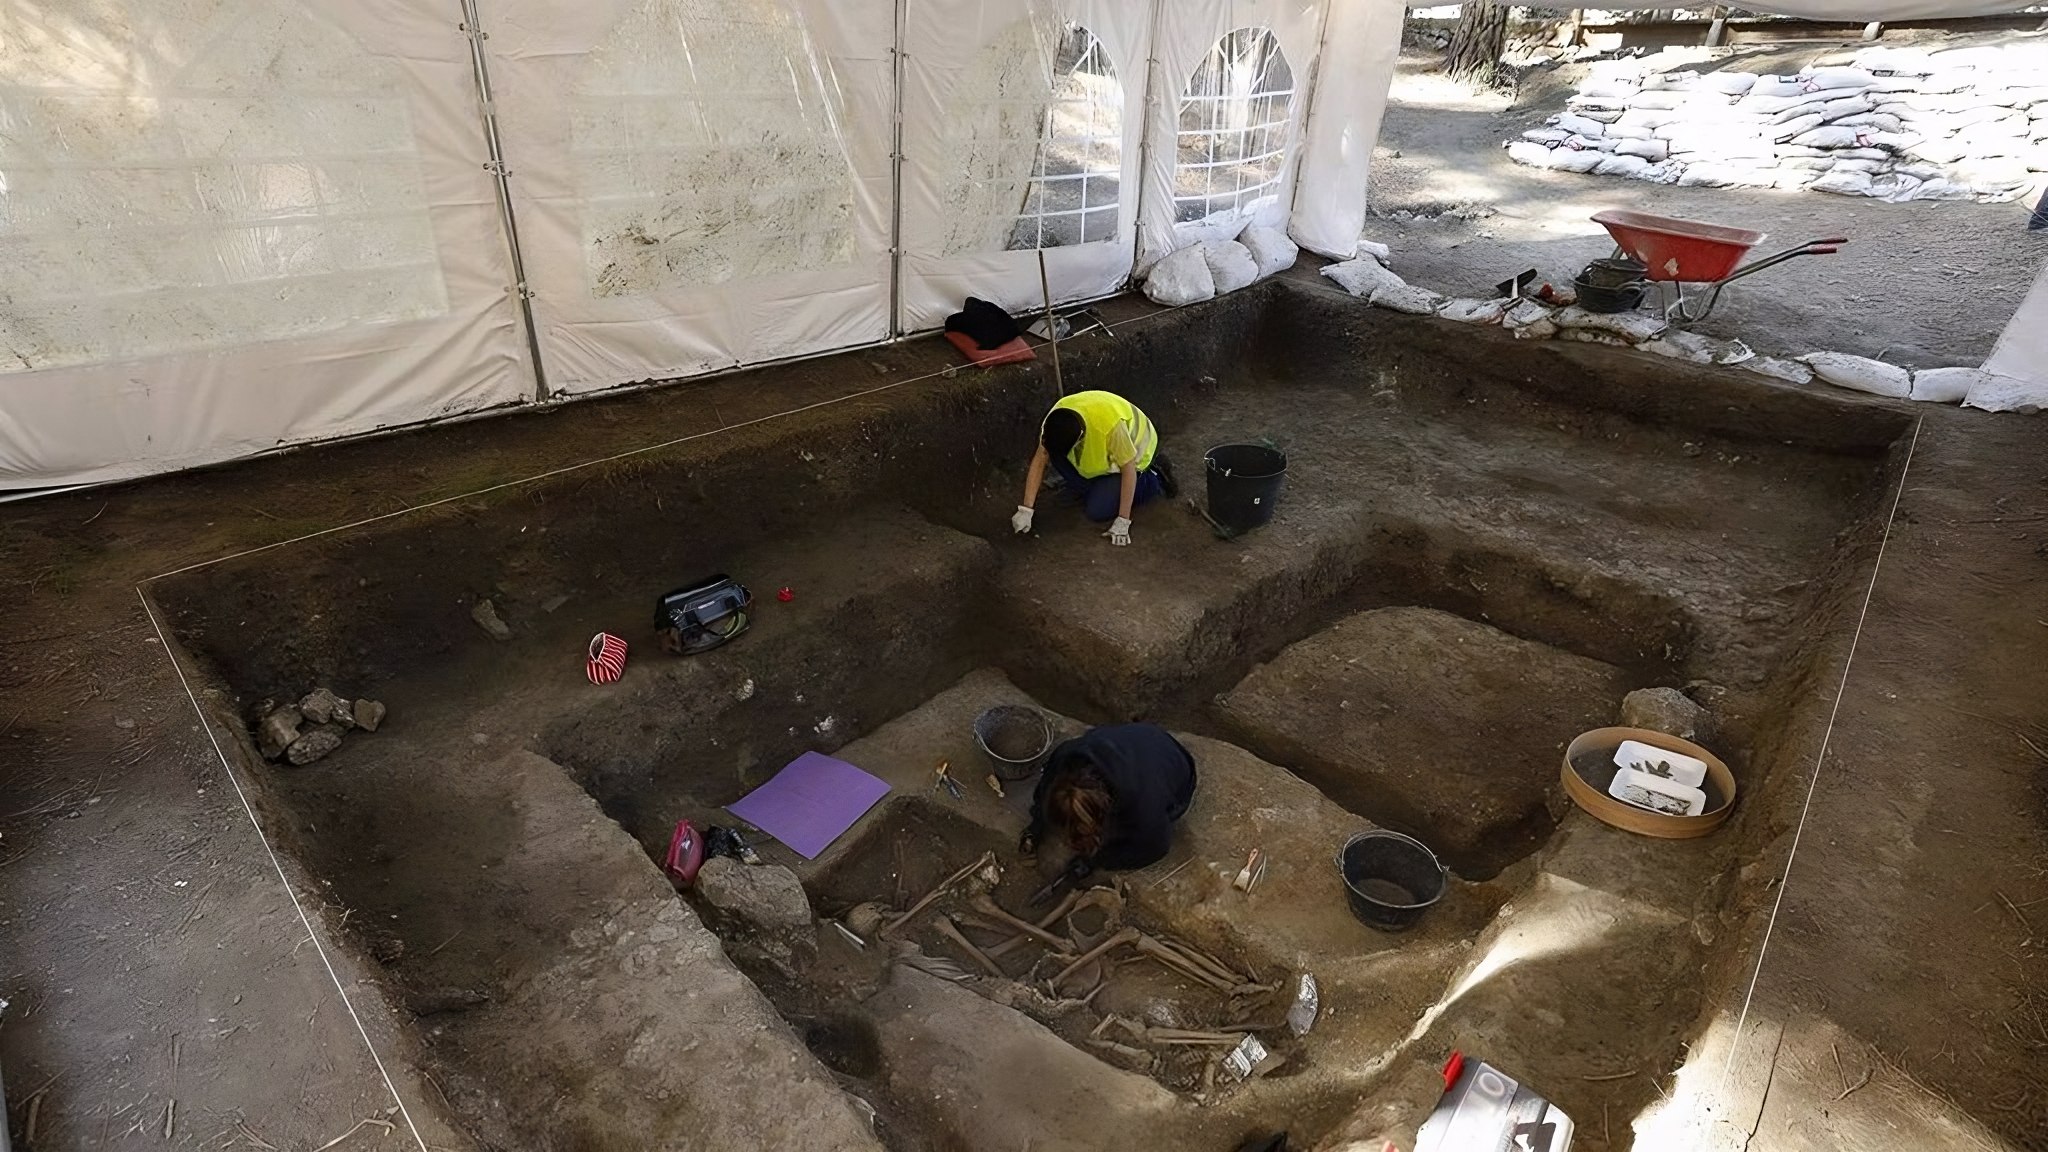 Cuarta campaña de excavaciones arqueo forenses en el Lugar de la Memoria Barranco de Víznar